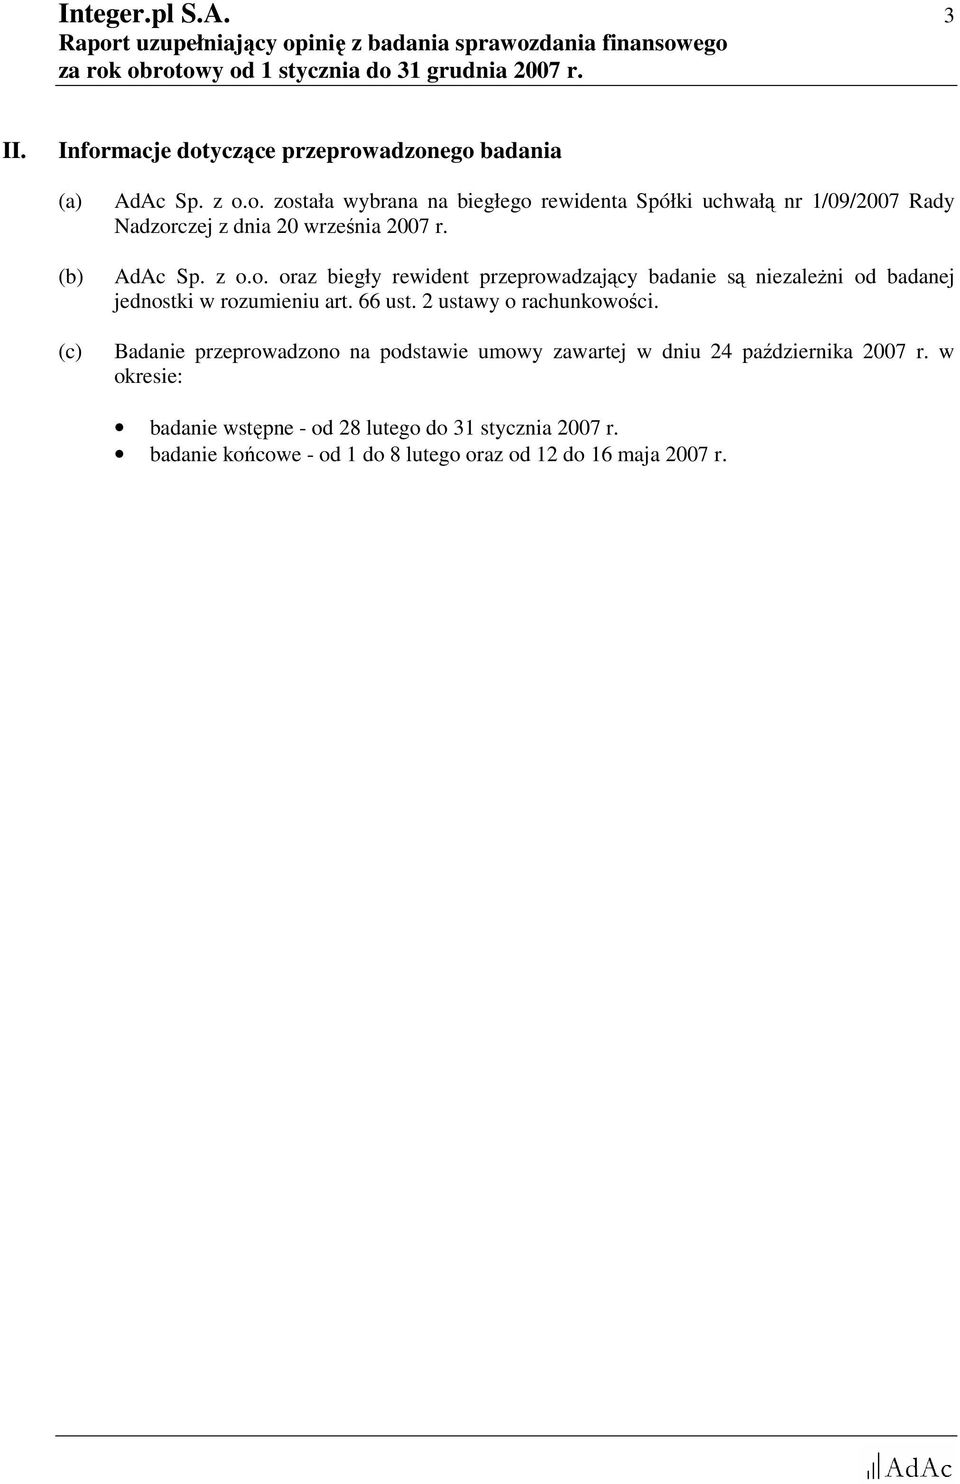 2 ustawy o rachunkowości. Badanie przeprowadzono na podstawie umowy zawartej w dniu 24 października 2007 r.